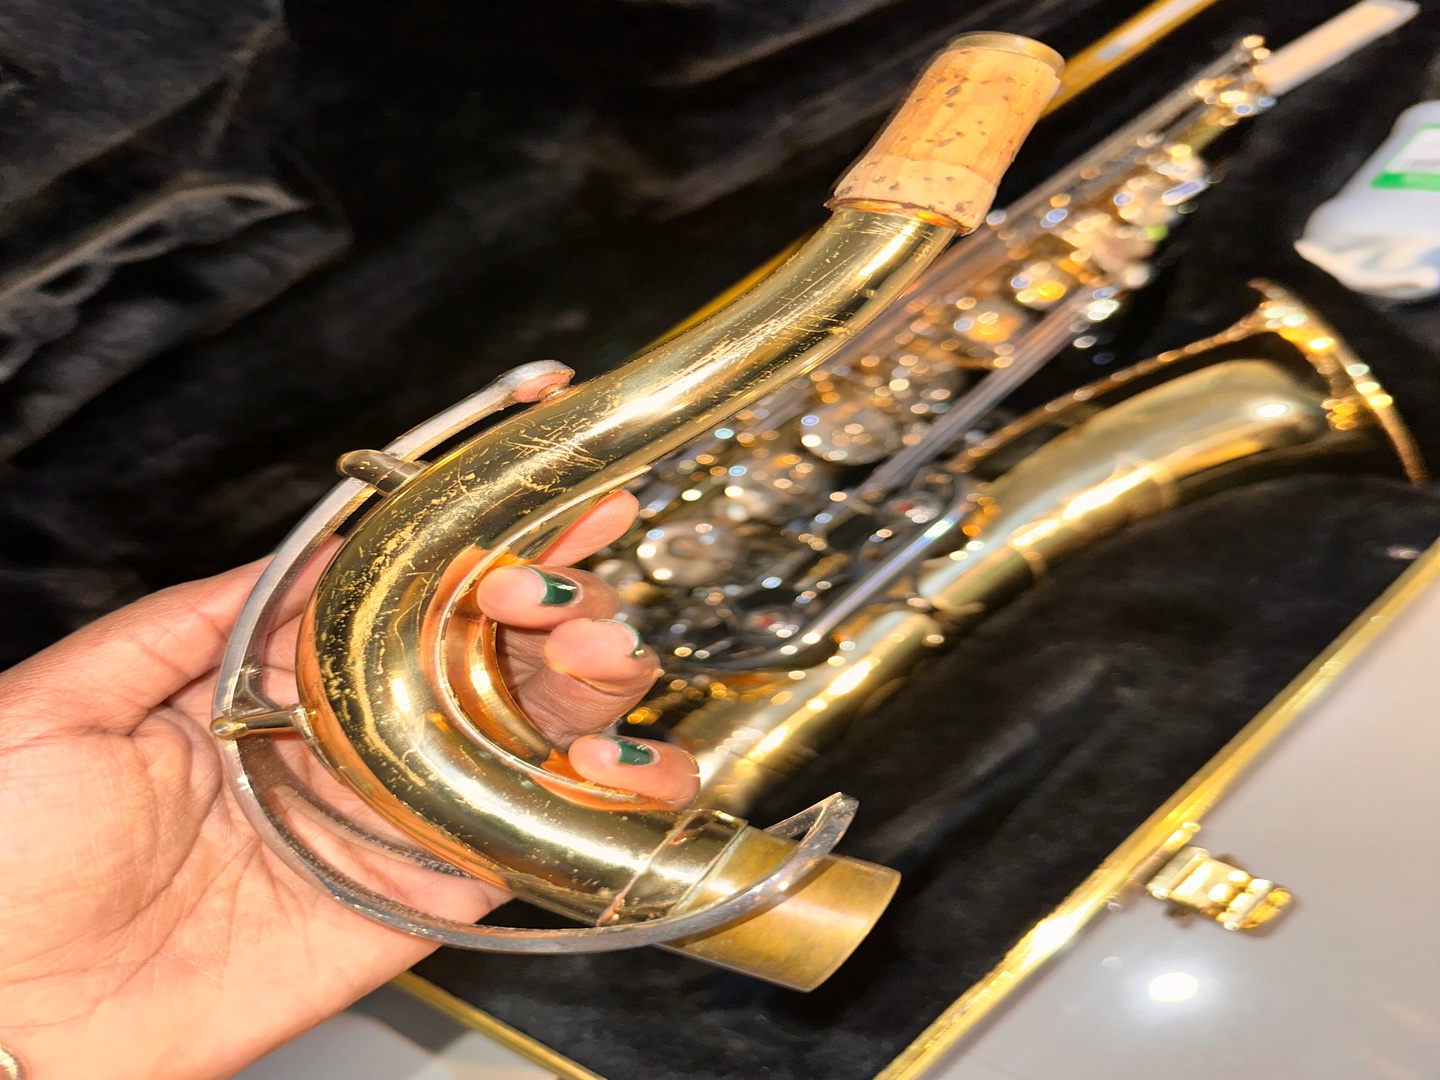 instrumentos musicales - Saxofón tenor Selmer. Poco uso, bien conservado, incluye accesorios y libros. 3